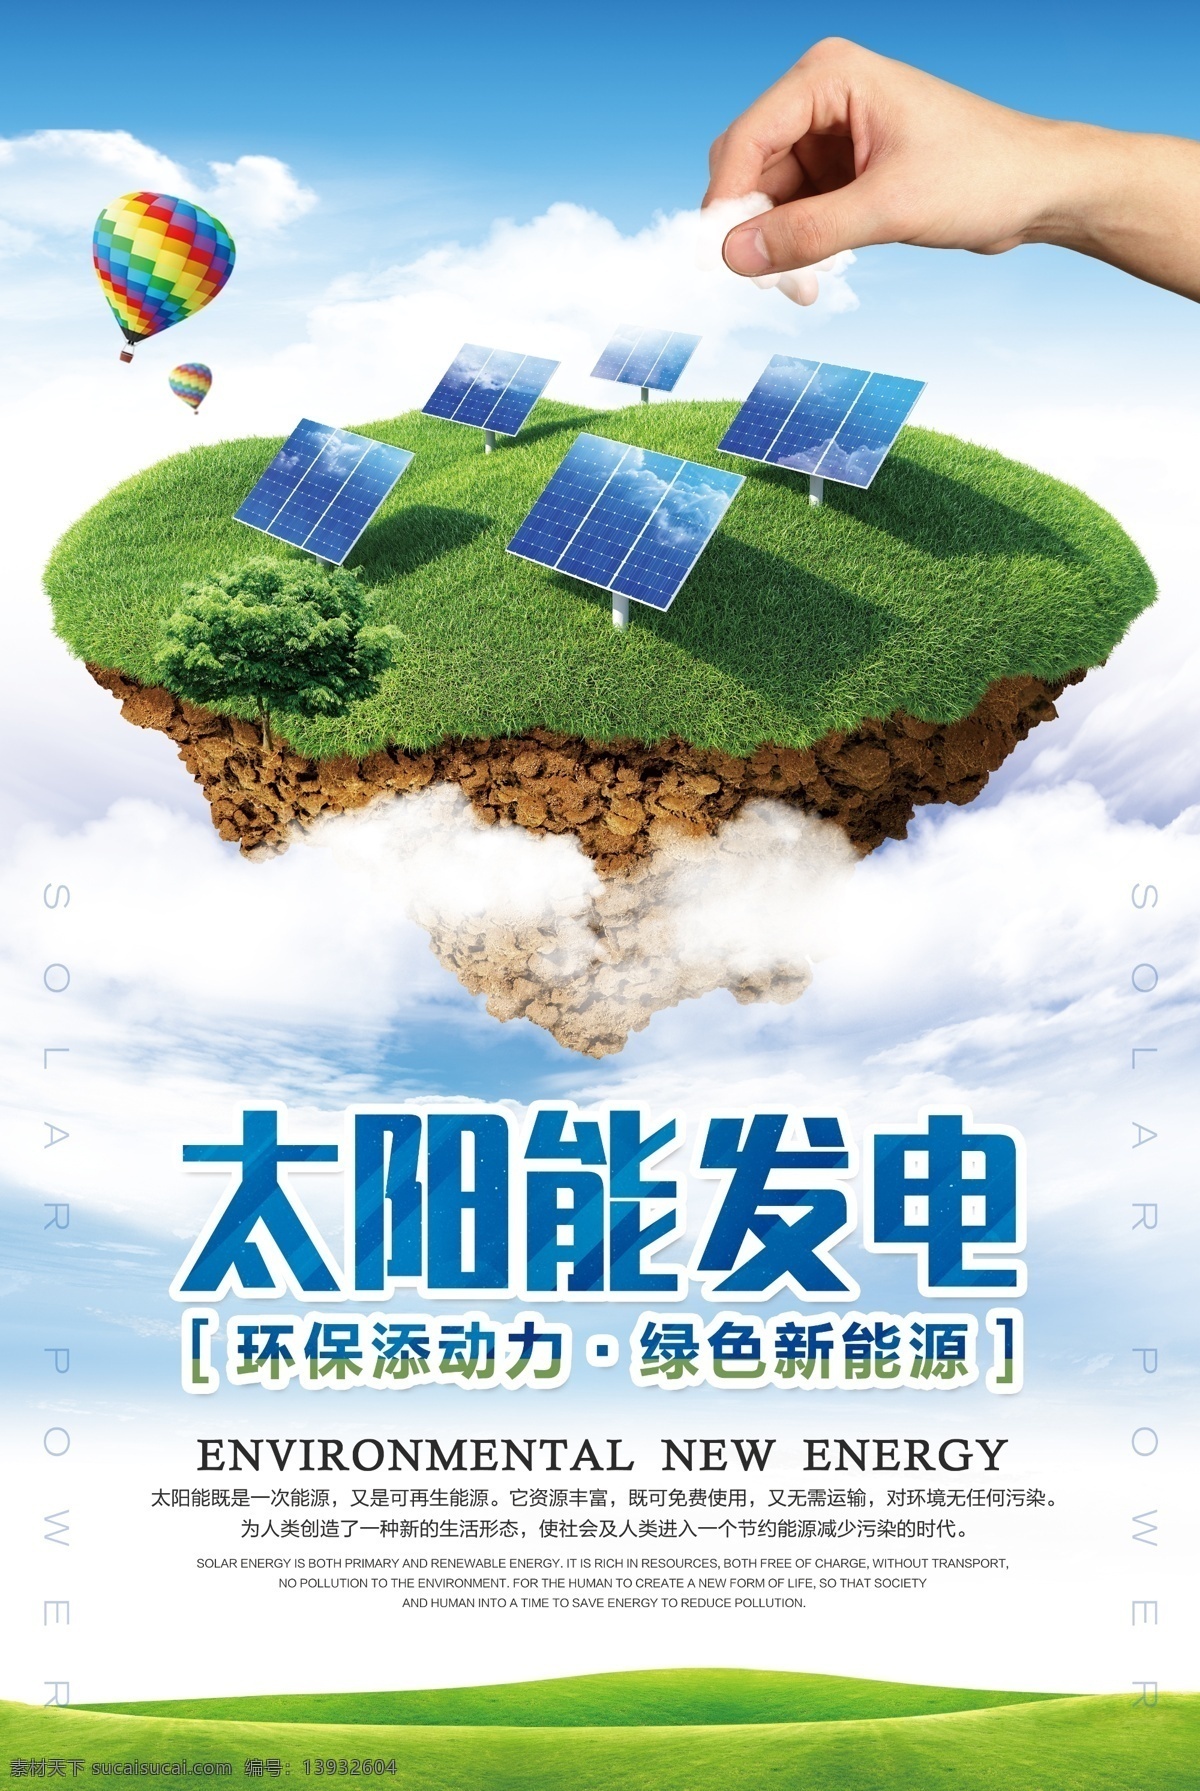 太阳能 发电 社会 公益活动 宣传海报 太阳能发电 公益 活动 宣传 海报